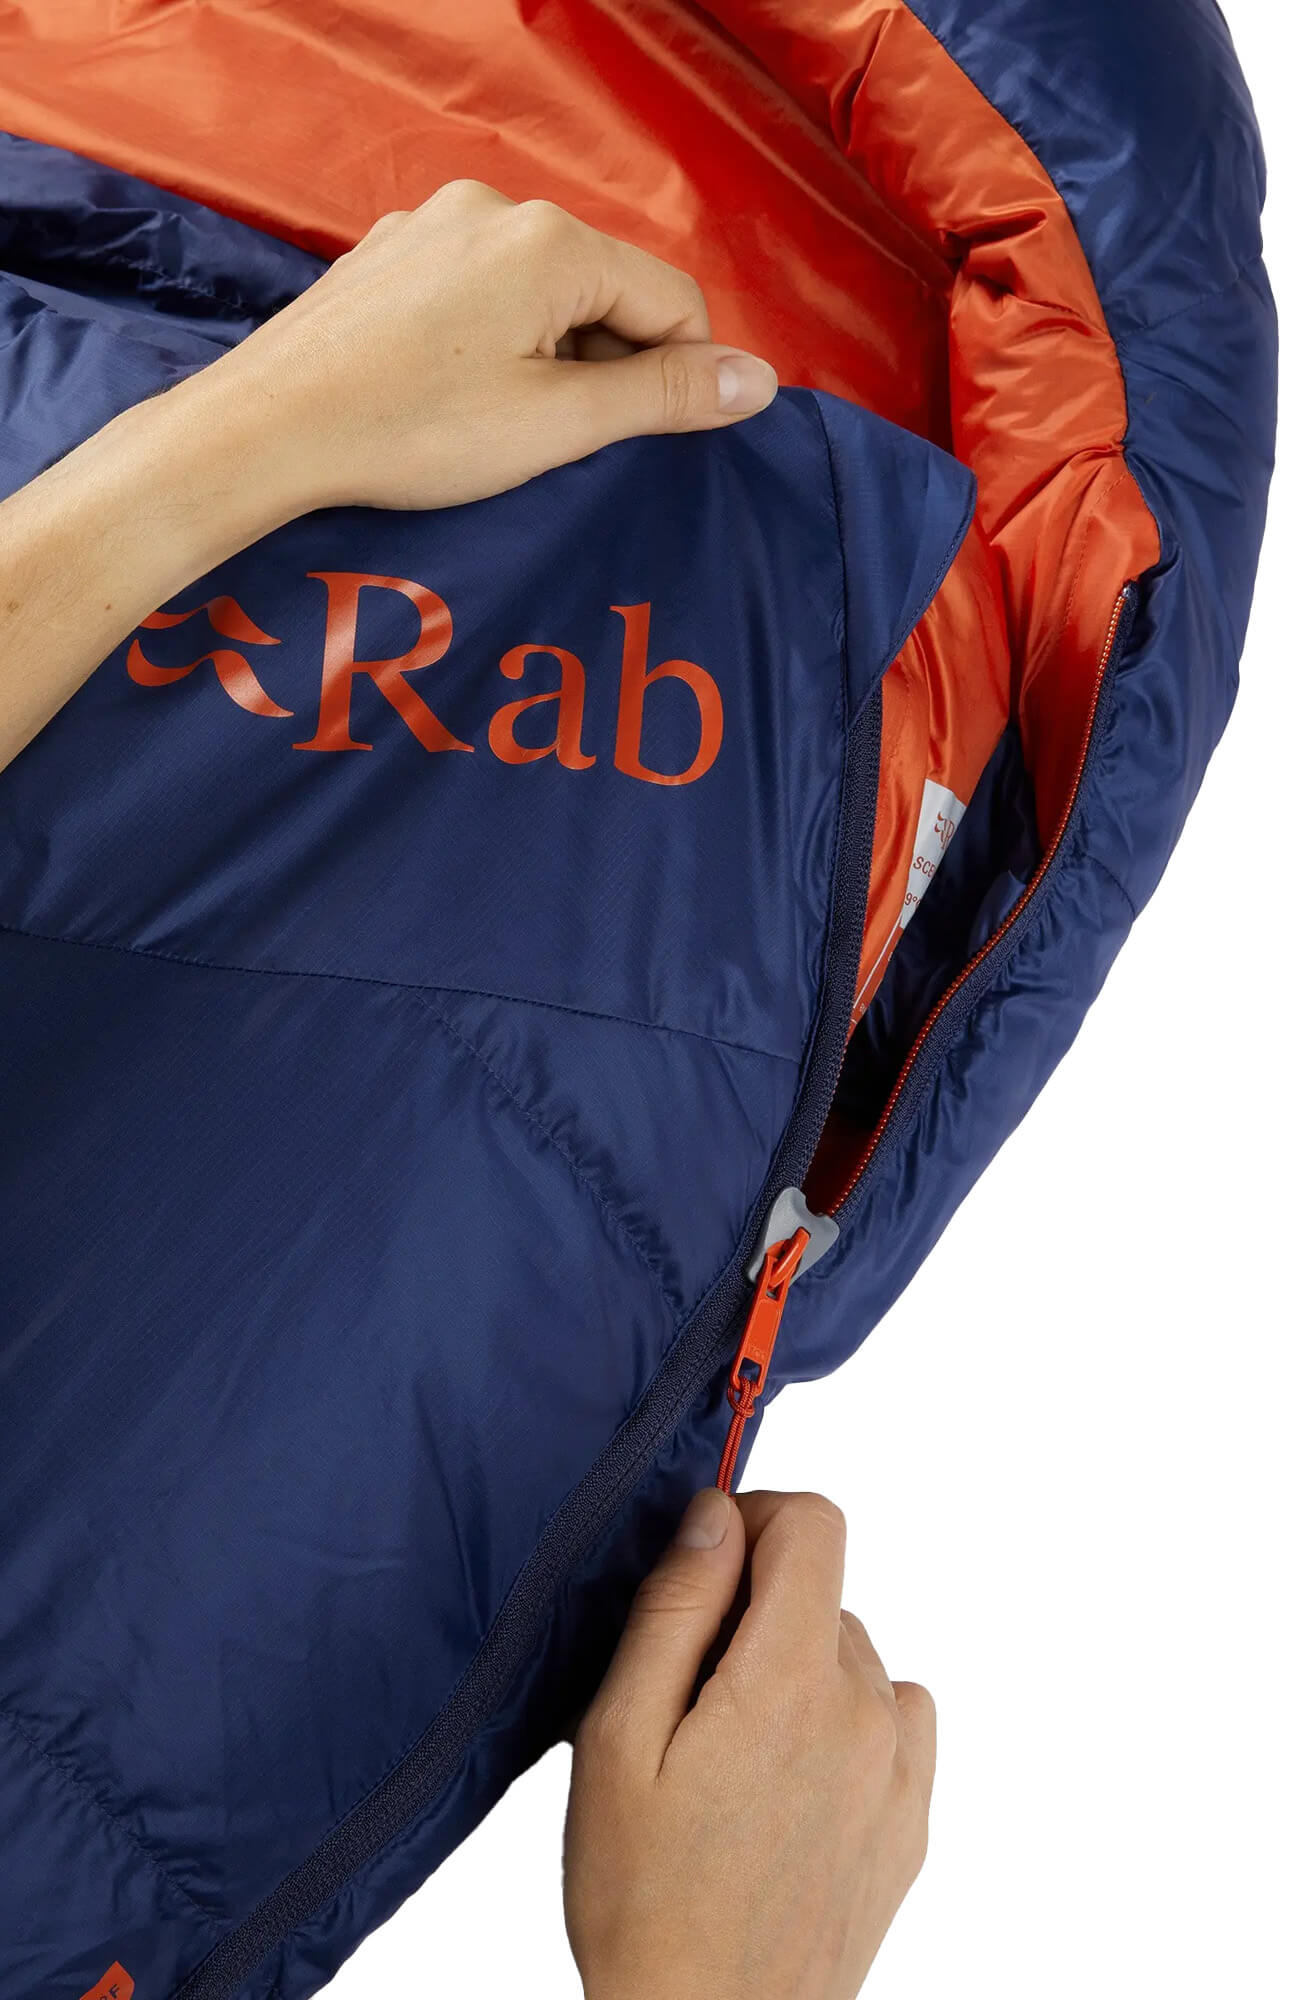 Rab Ascent 700 Wms Lightweight Down Sleeping Bag